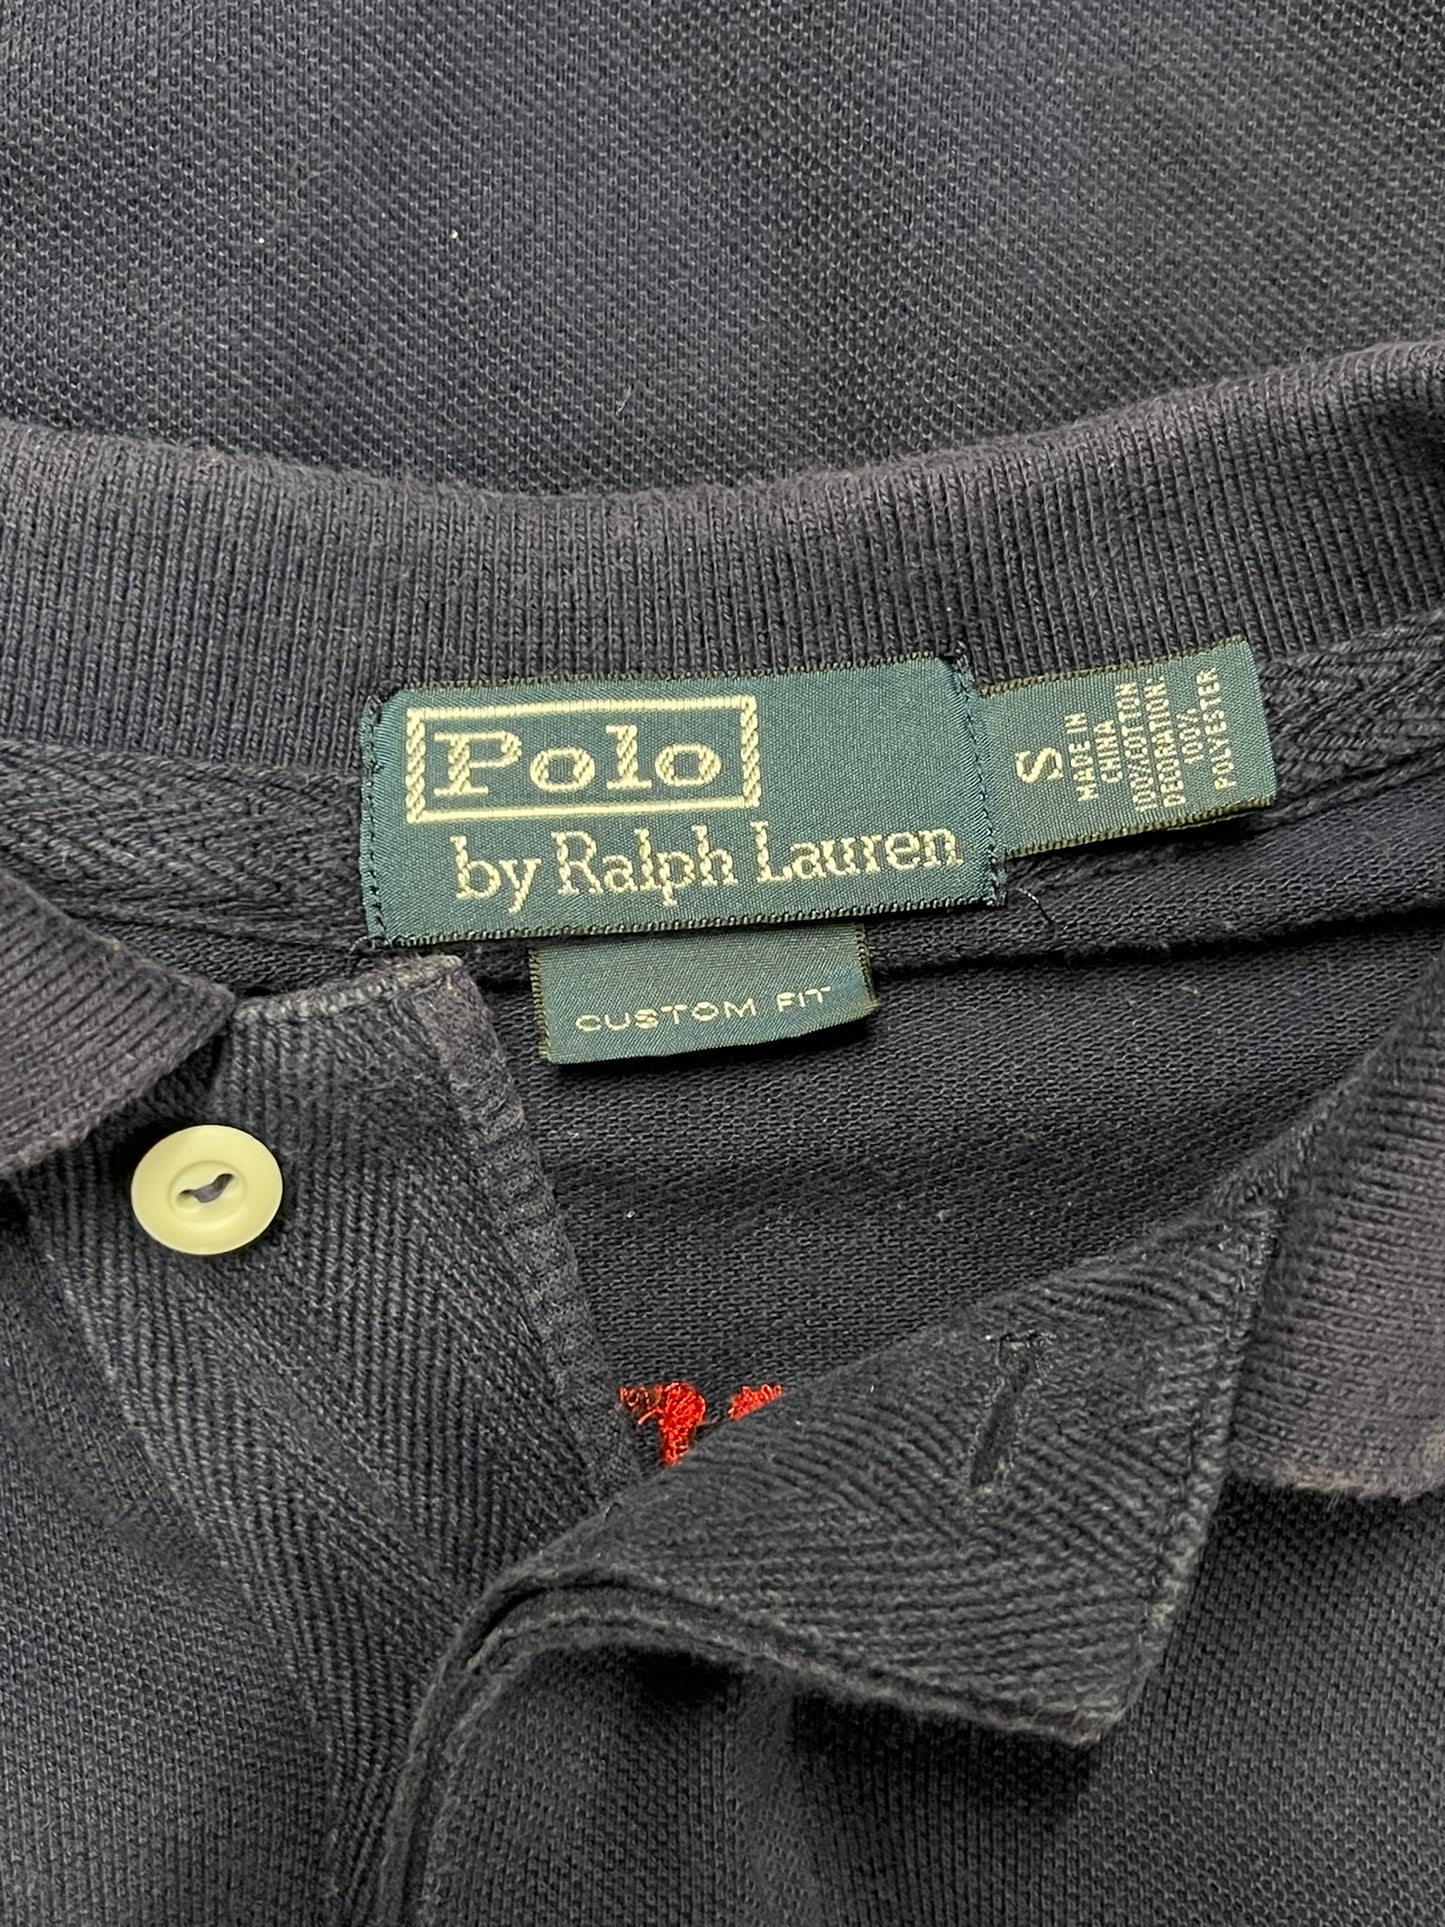 Polo Ralph Lauren Blue Polo Top Small